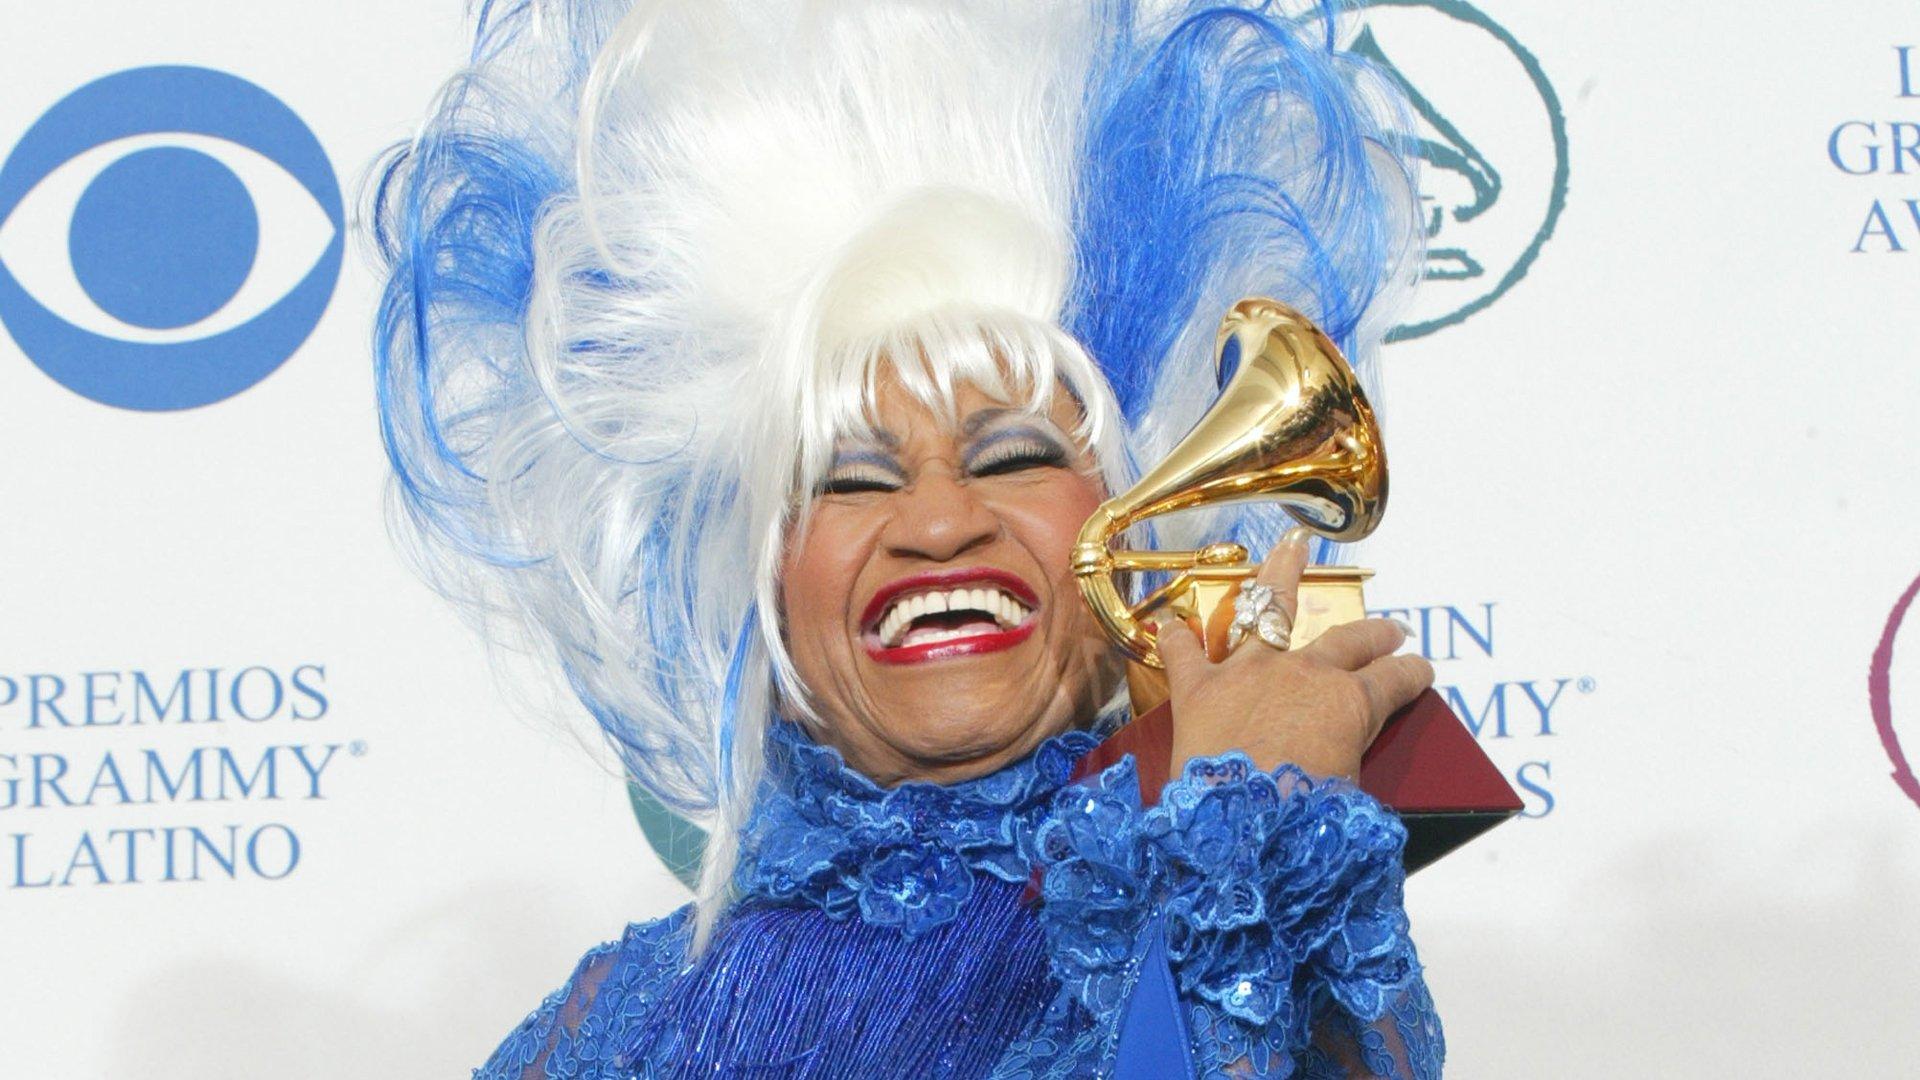 Celia Cruz smiles with her GRAMMY award